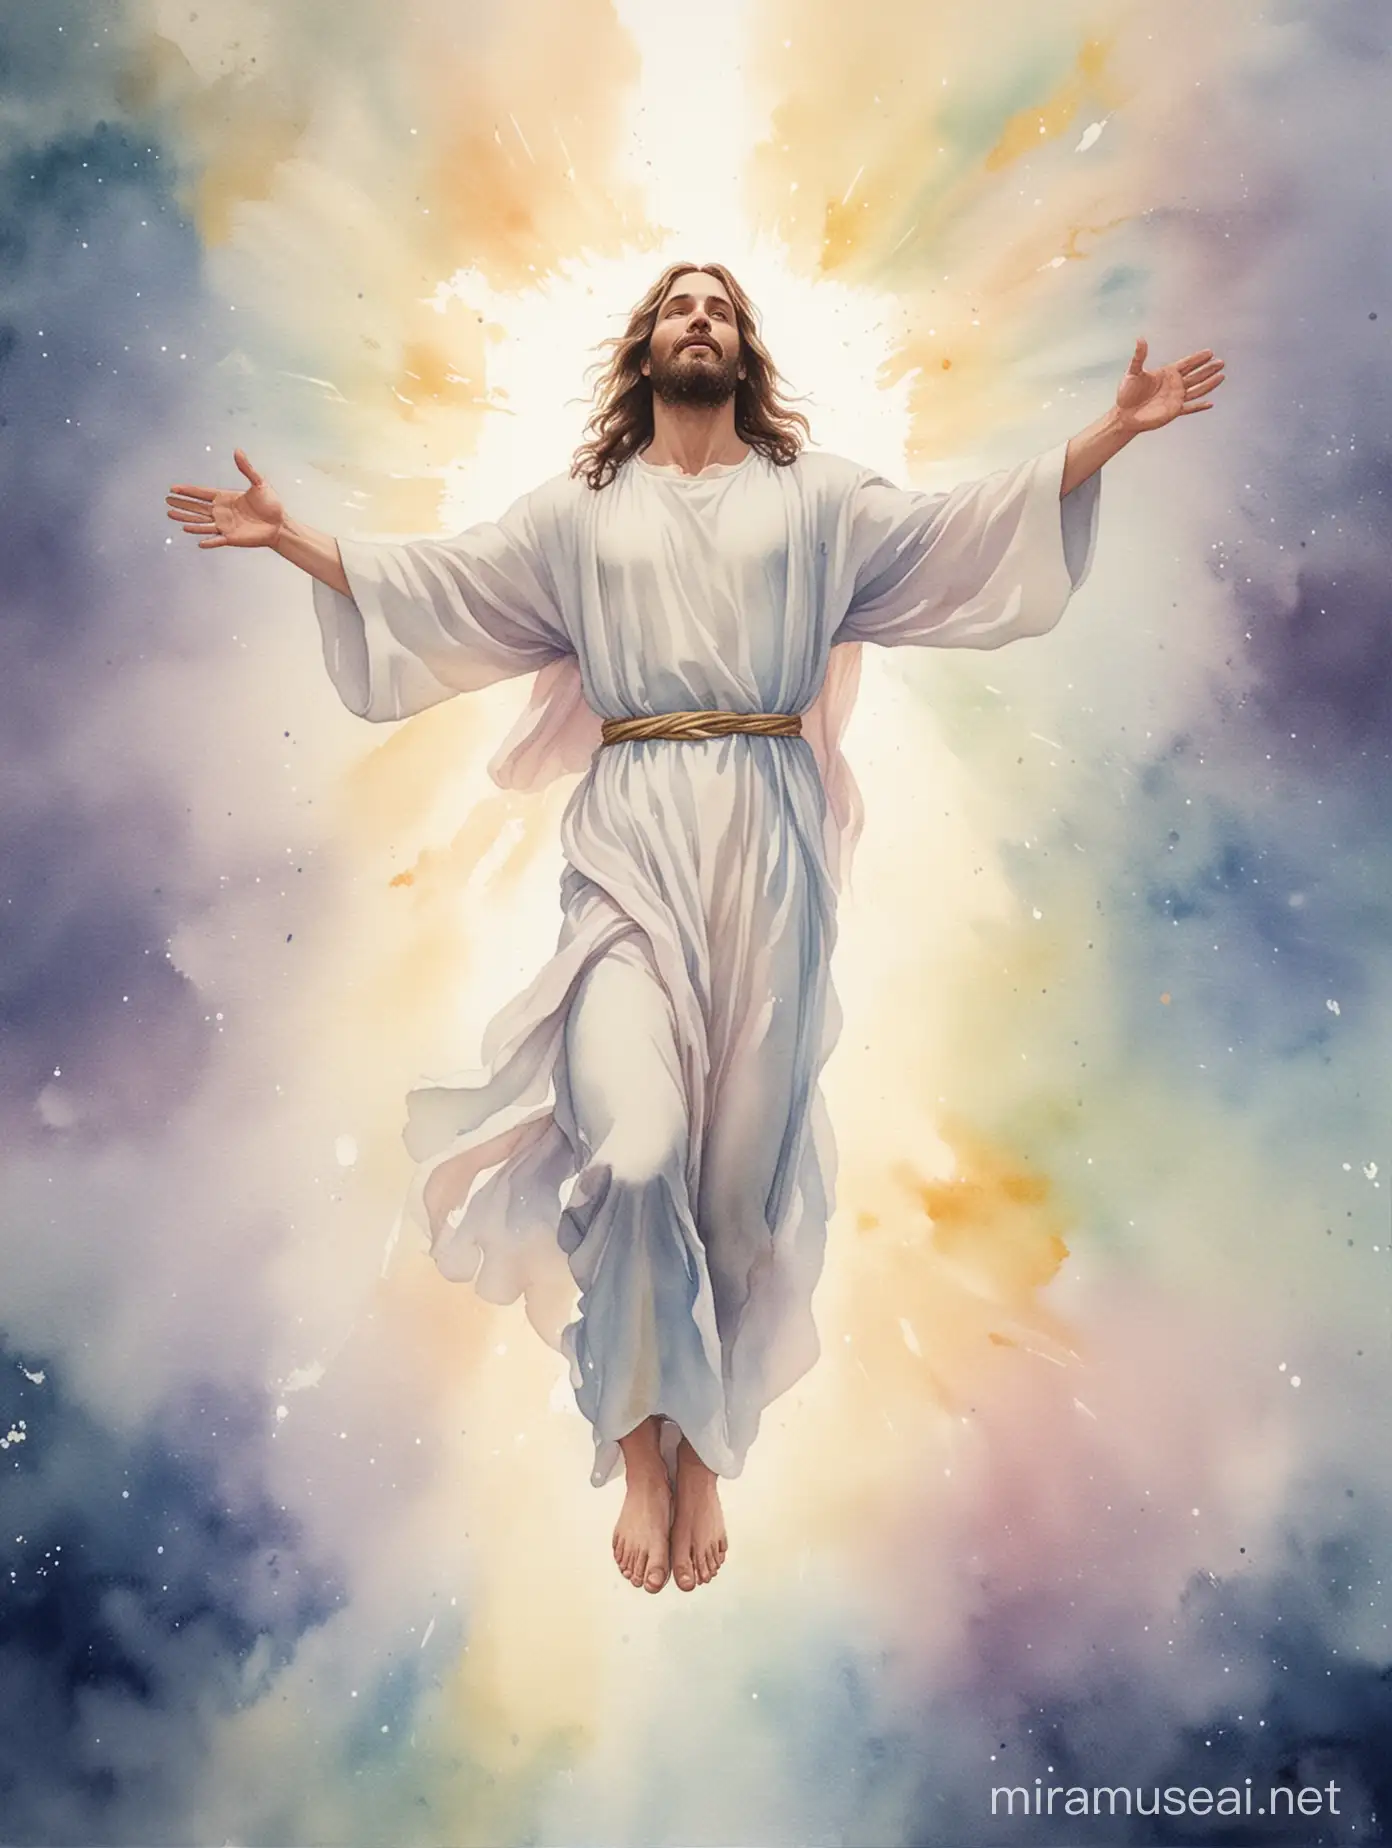 Ethereal Ascension of Jesus Christ Radiant Watercolor Illustration for Easter Celebration